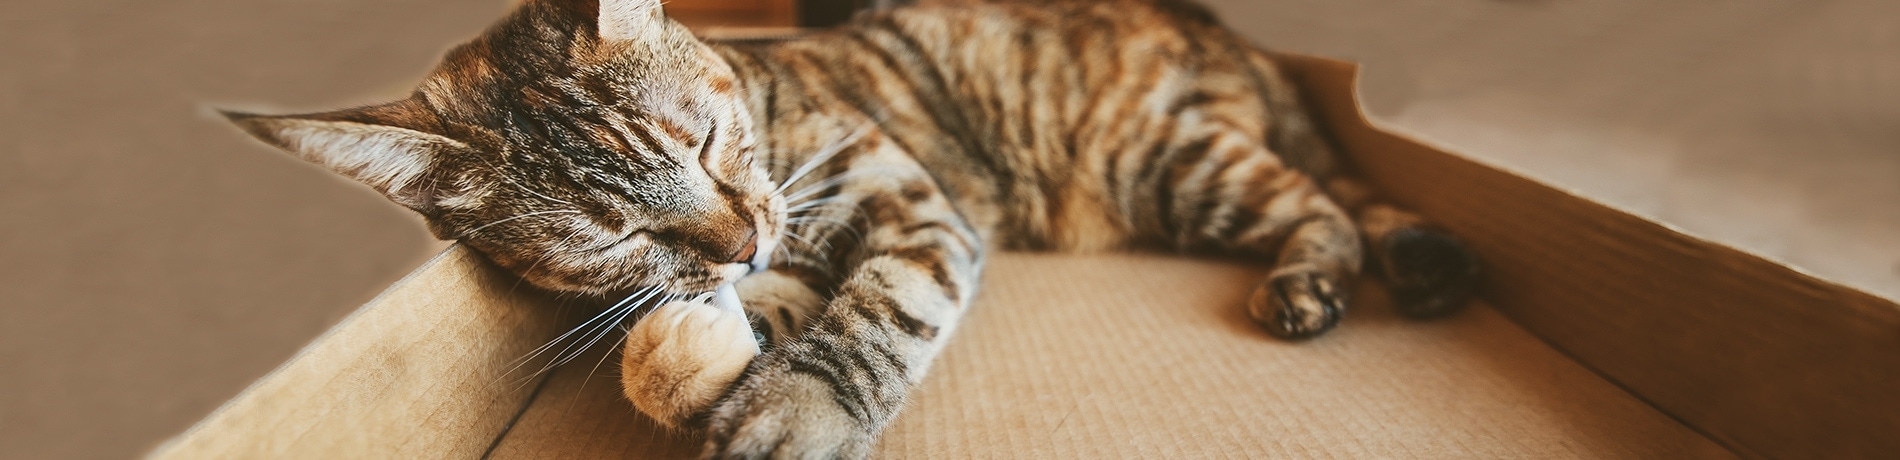 Verveling kat – Tips om dit te voorkomen!